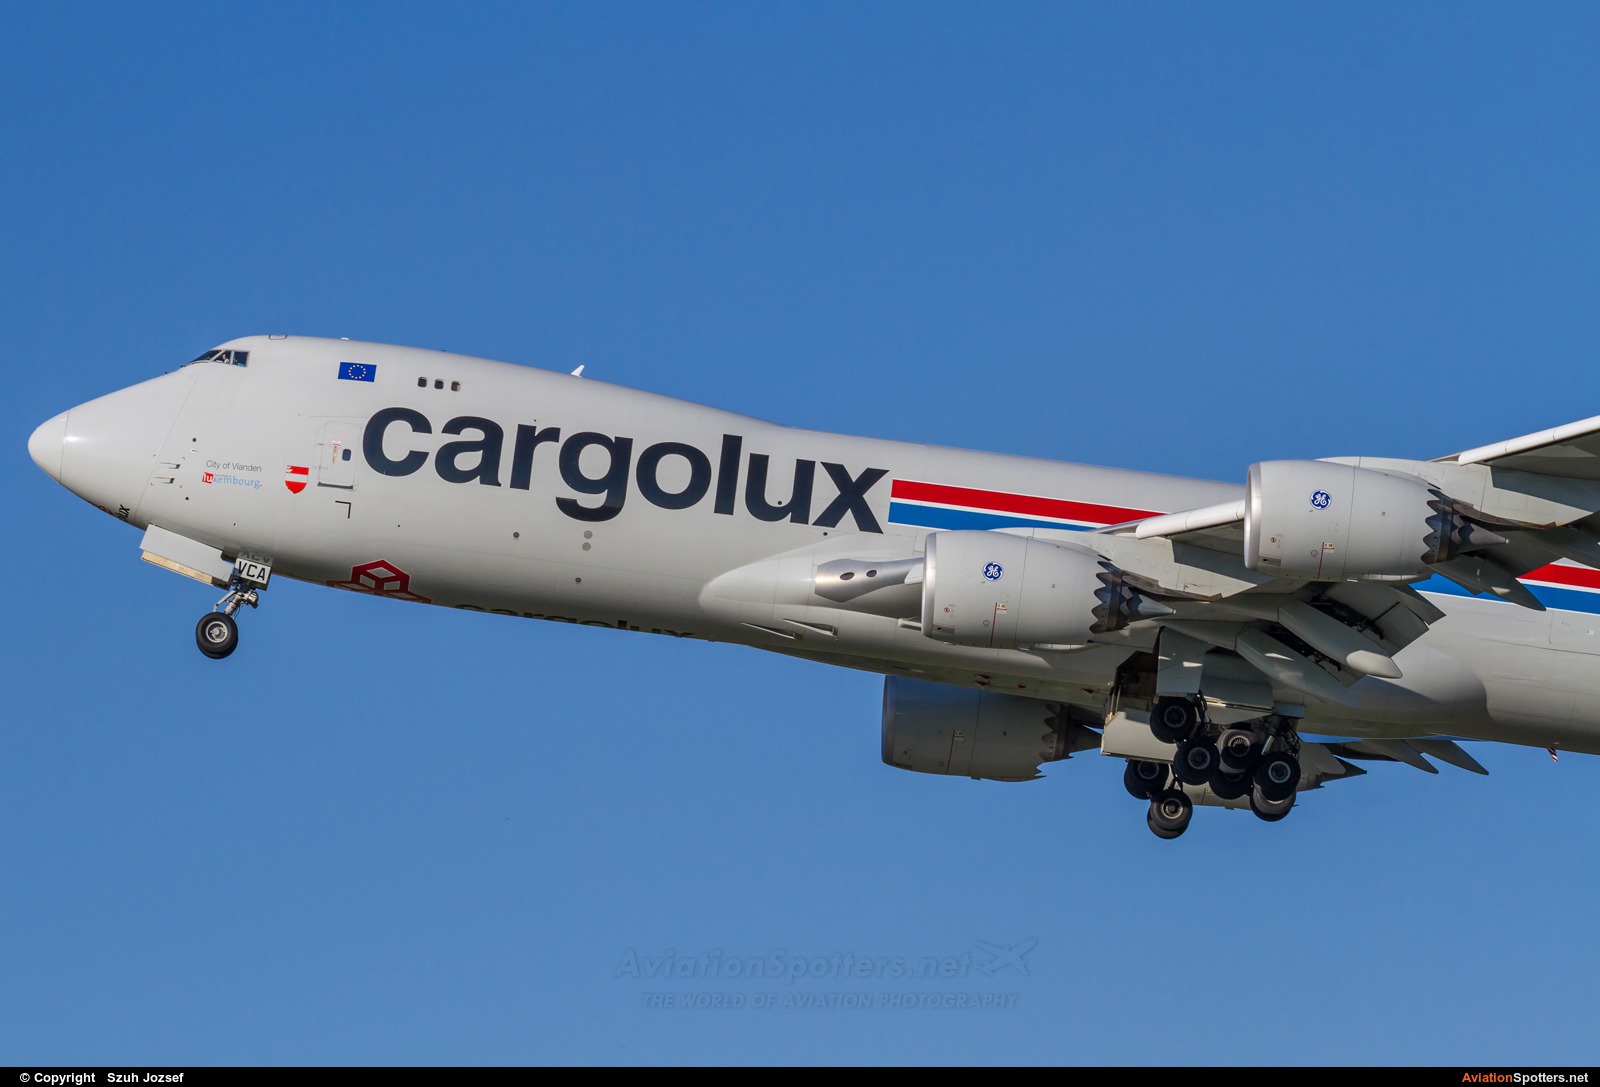 Cargolux  -  747-8F  (LX-VCA) By Szuh Jozsef (szuh jozsef)